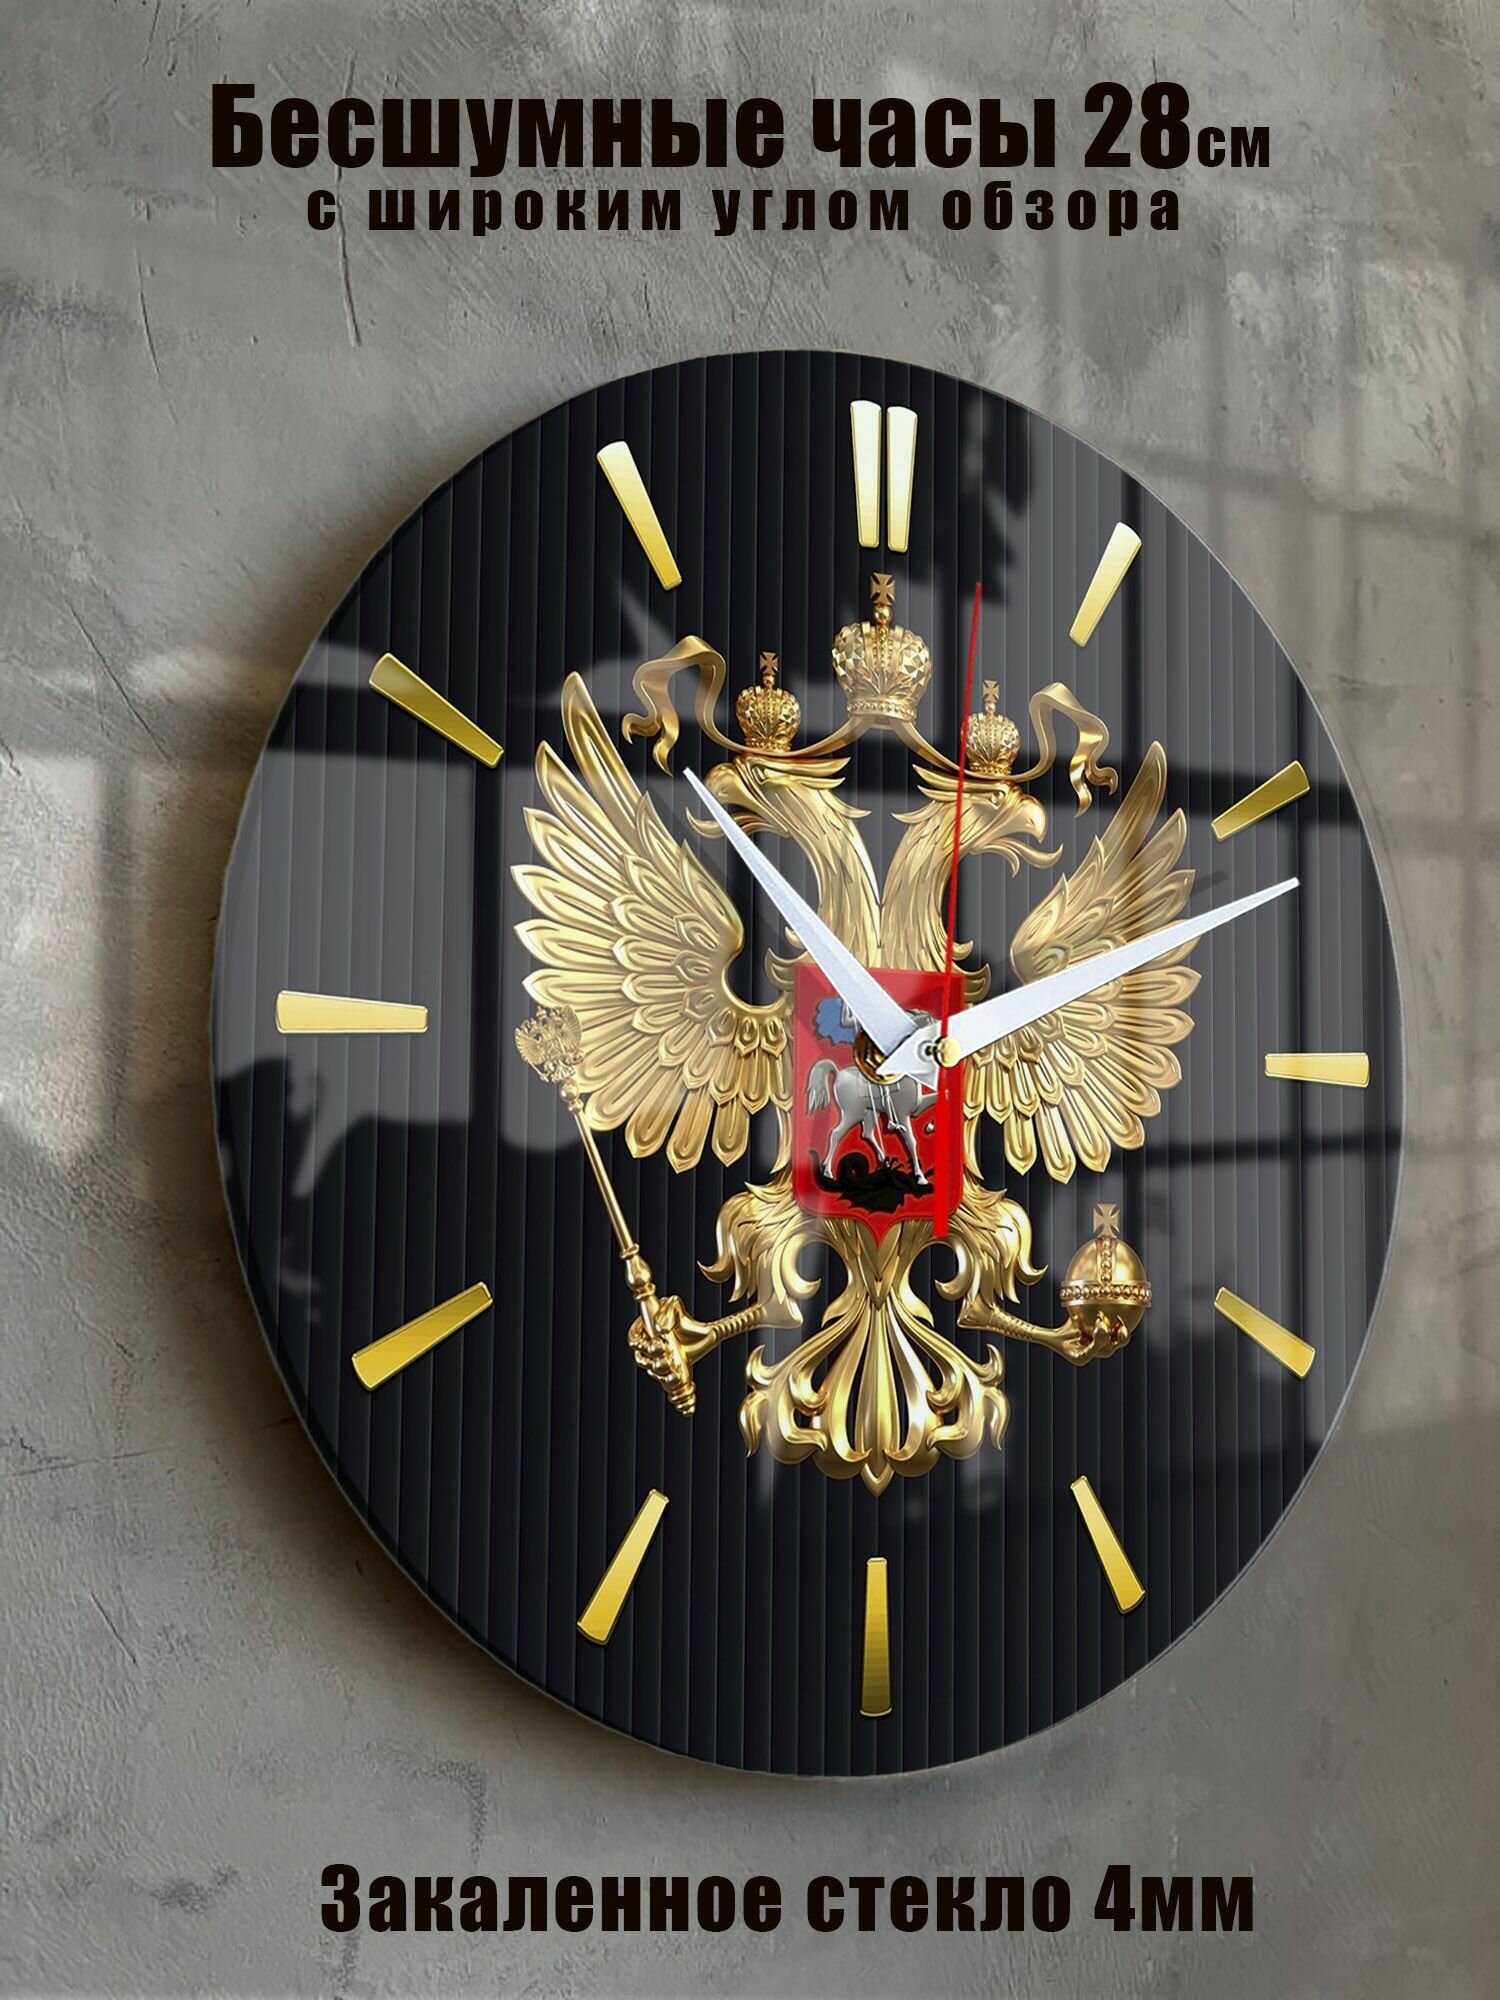 Часы настенные бесшумные большие на кухню на стену "Часовой завод идеал" с символикой России, диаметр 28 см, часы кухонные настенные интерьерные настенные часы